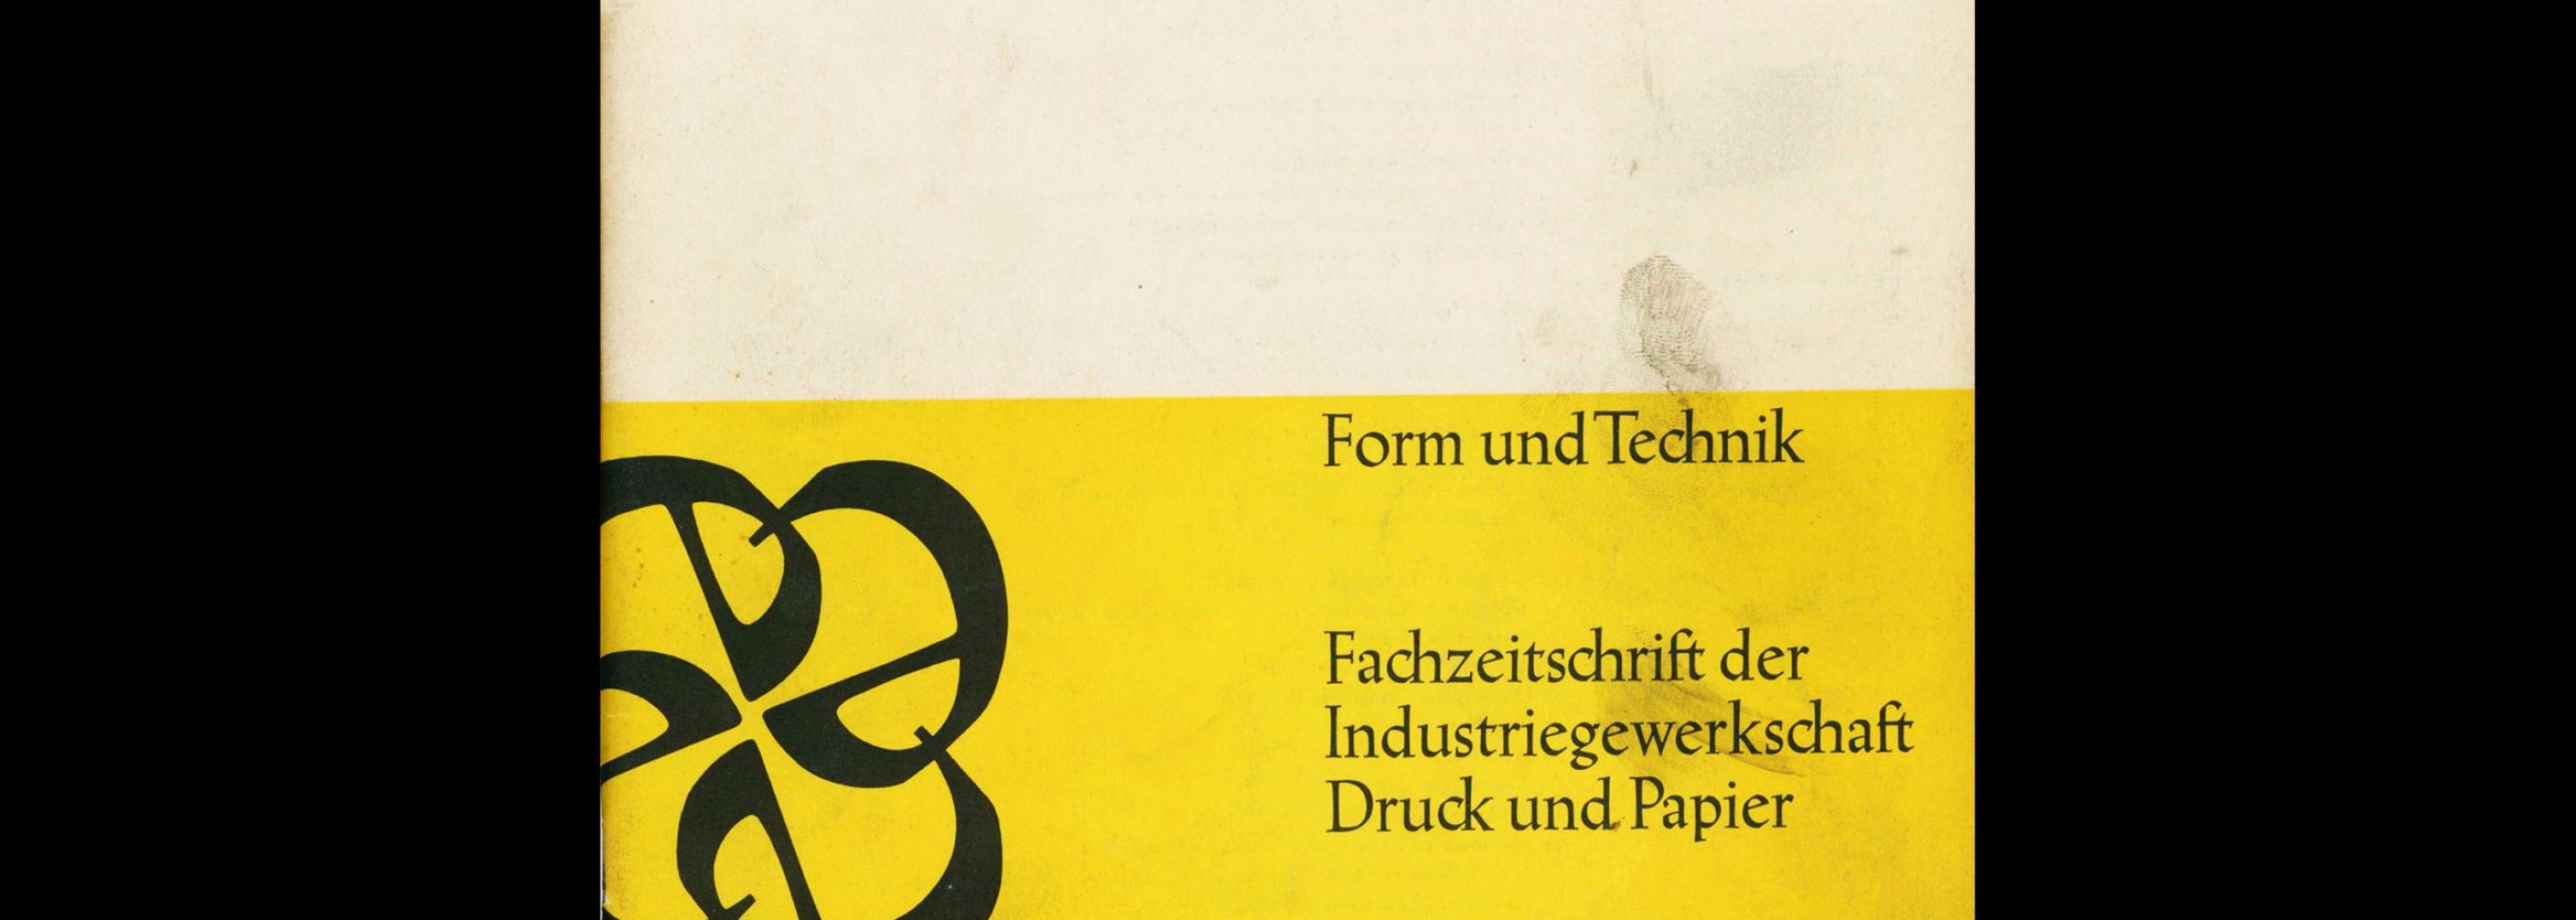 Form und Technik, 1, 1964